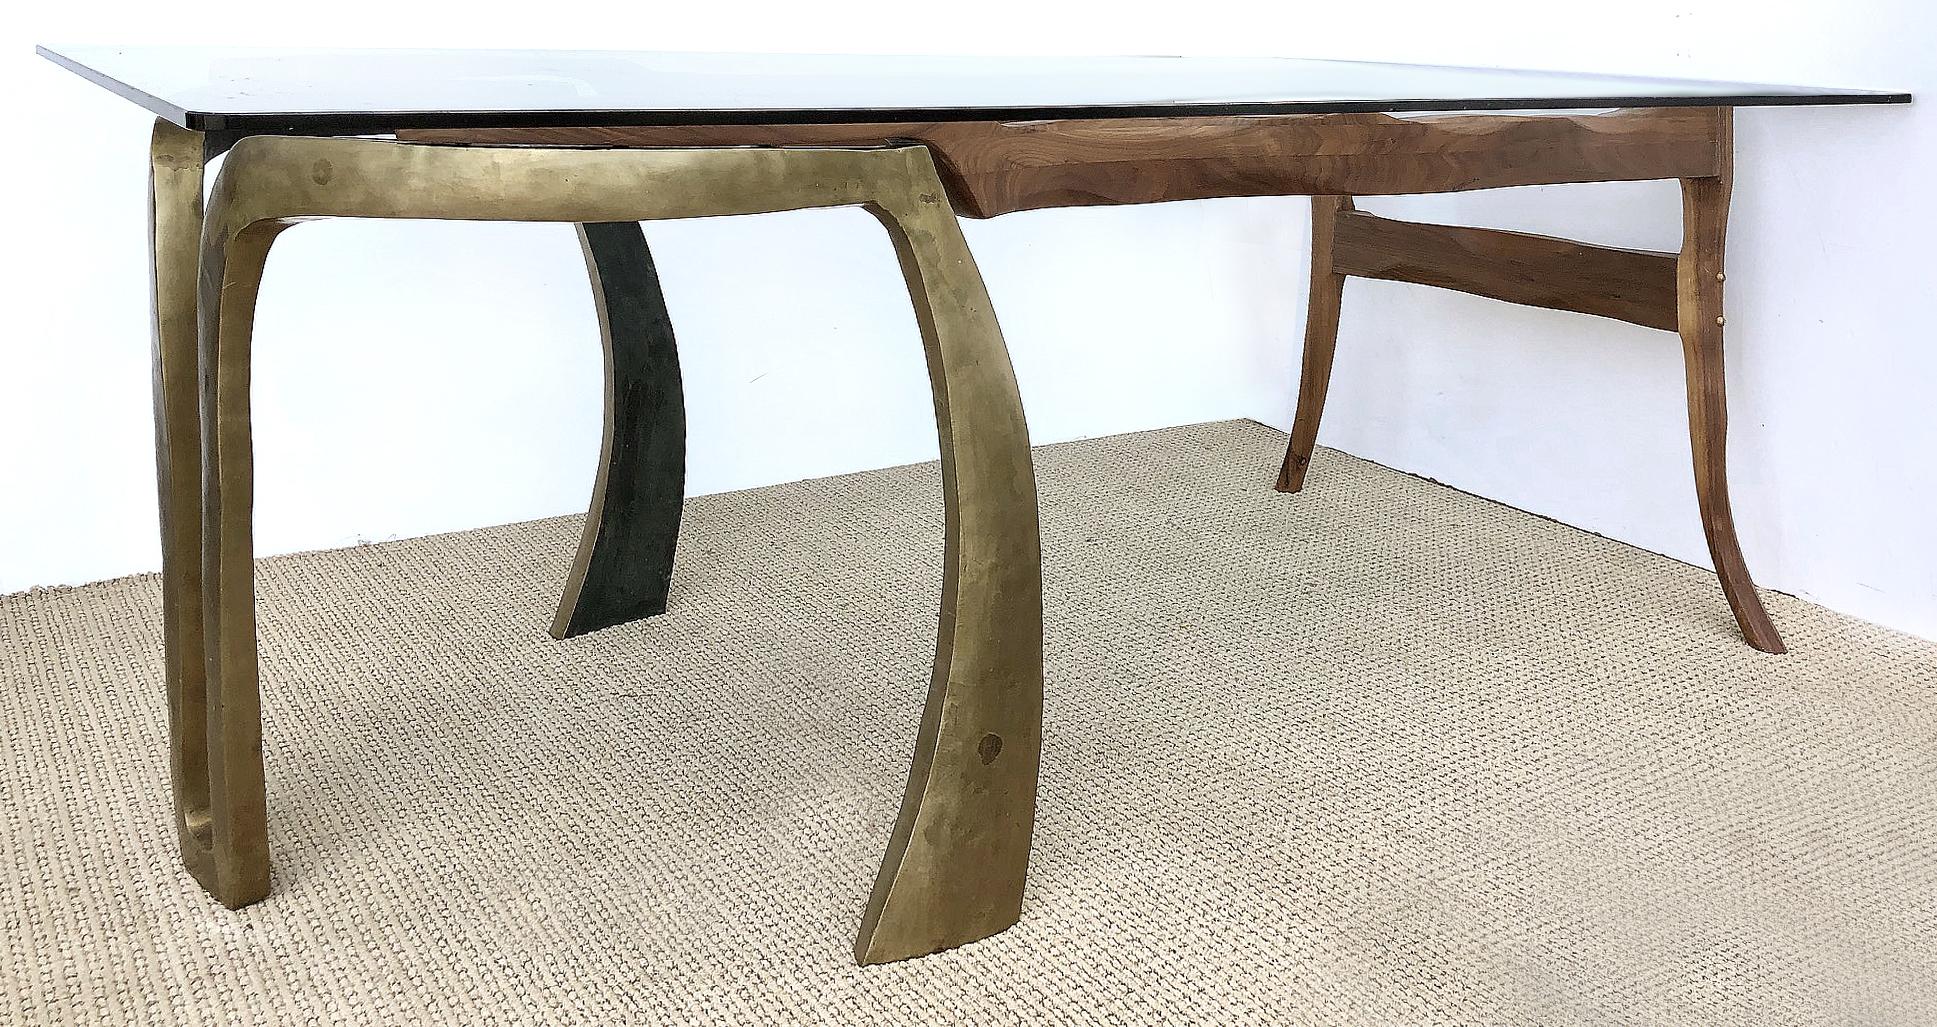 Hand-Carved Brutalist Studio Sculptural Bronze and Wood Desk or Table